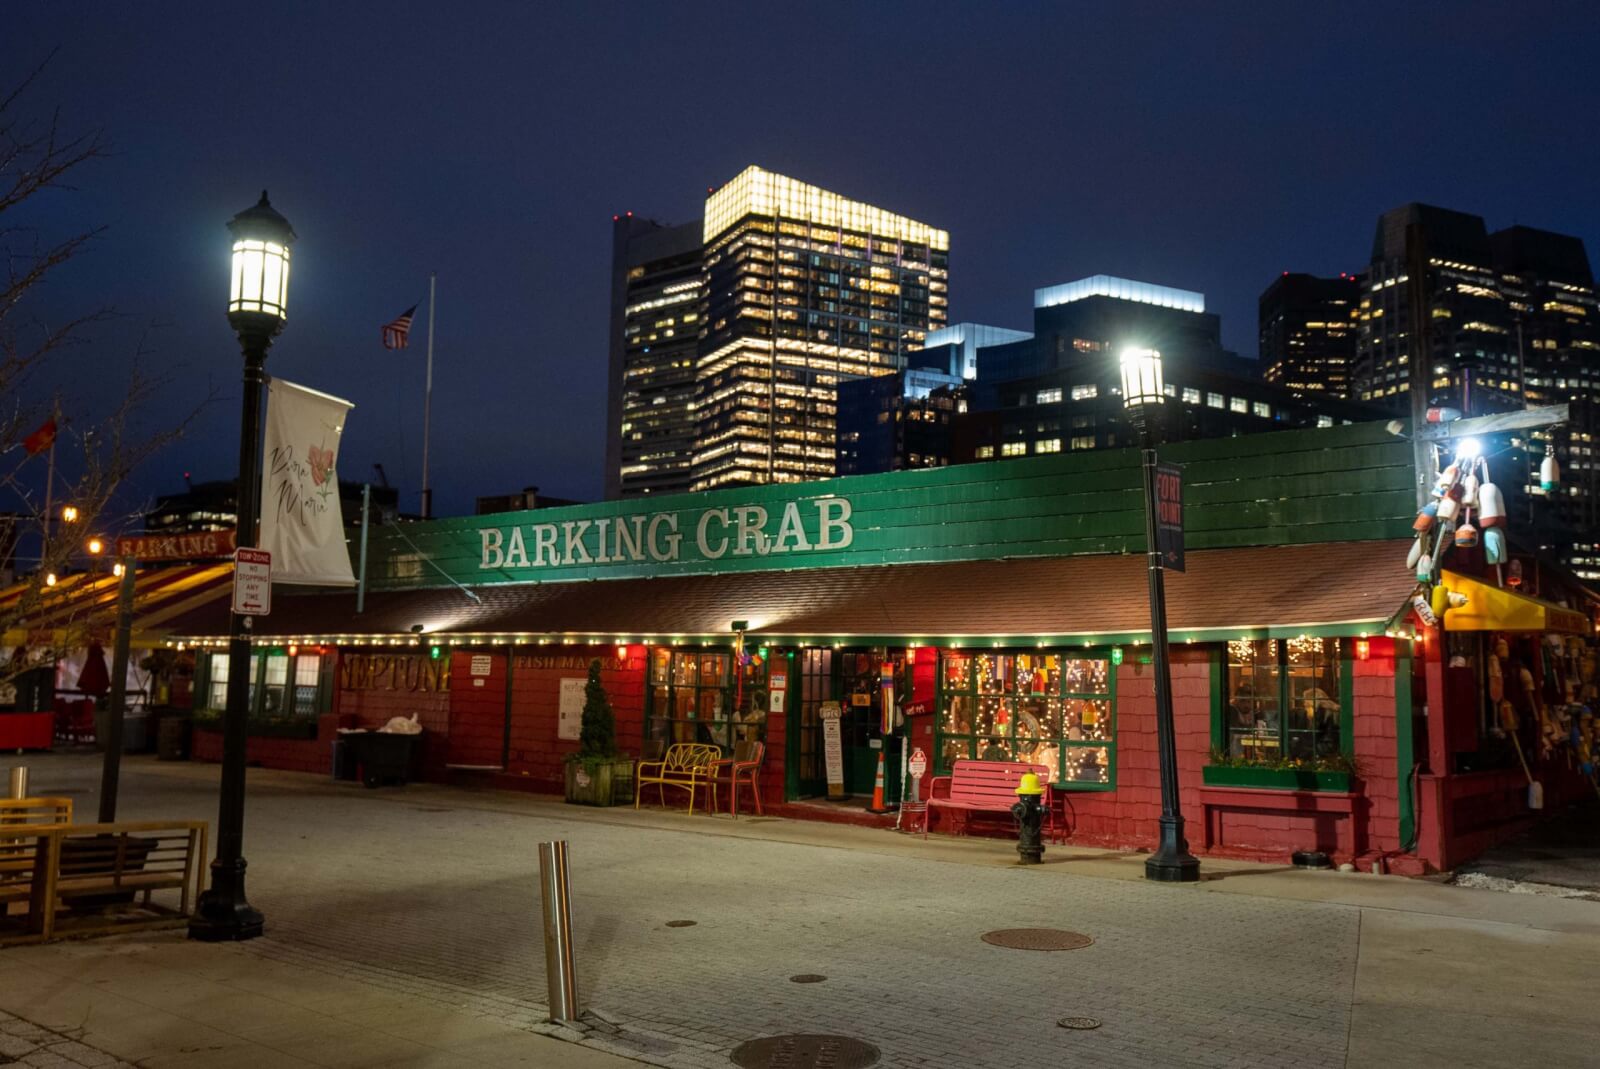 Barking Crab Restaurant in Boston at night